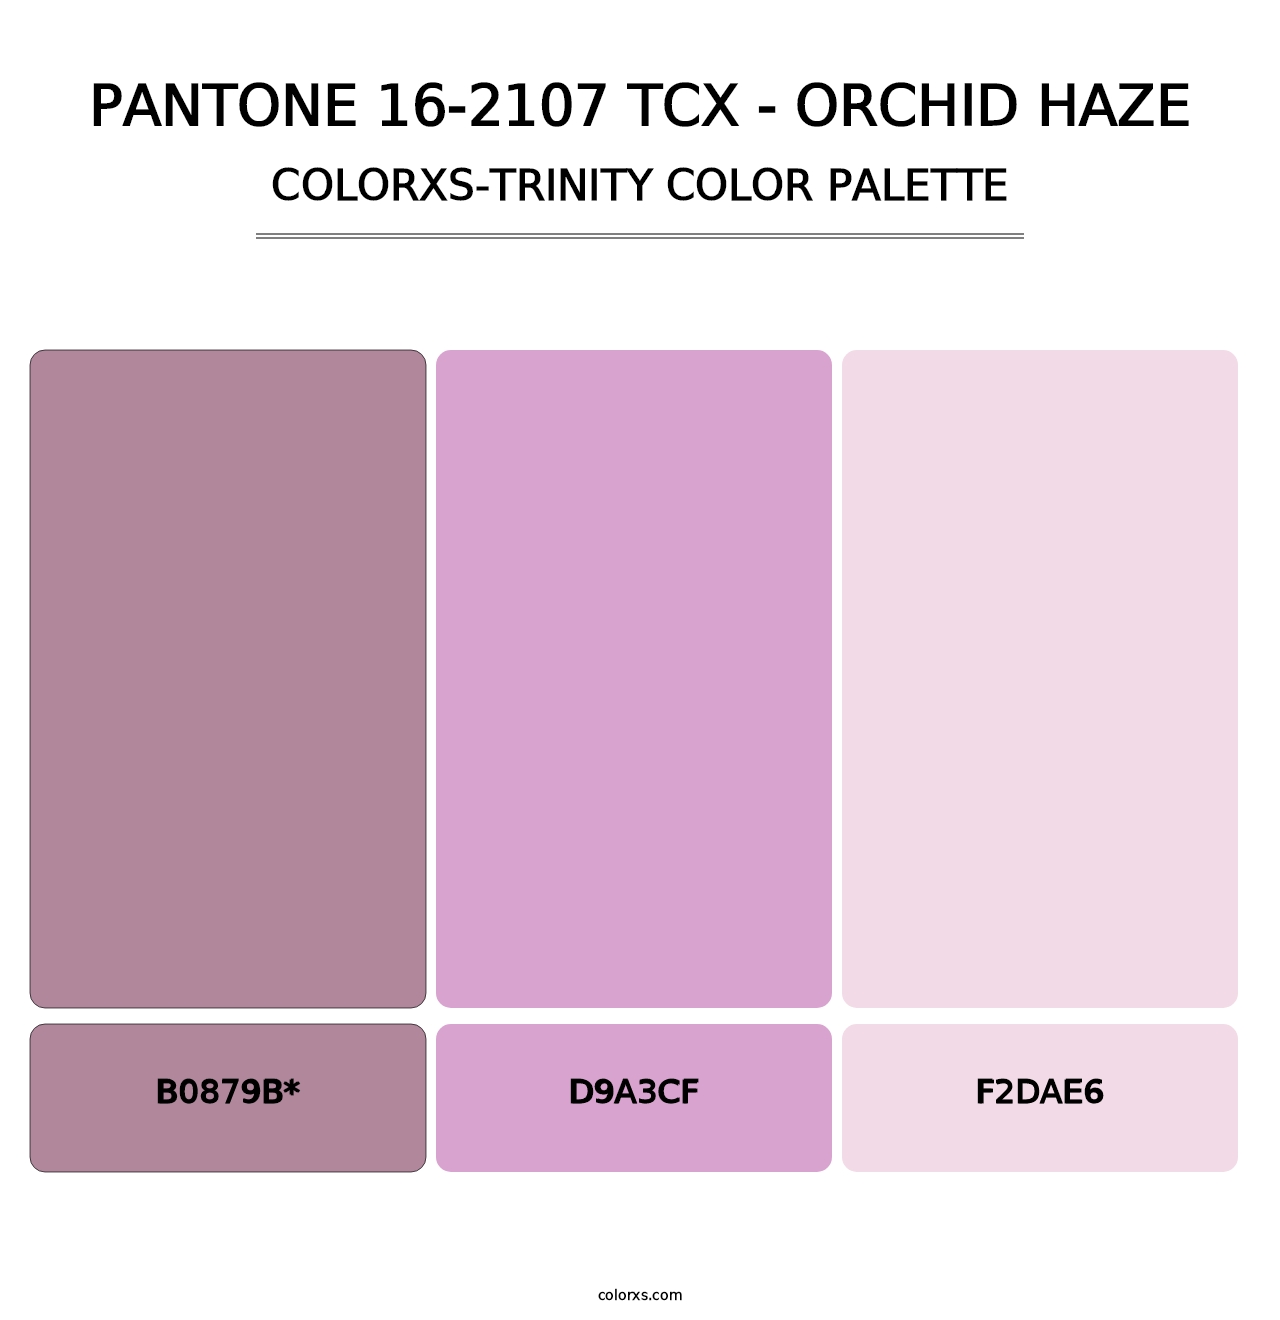 PANTONE 16-2107 TCX - Orchid Haze - Colorxs Trinity Palette